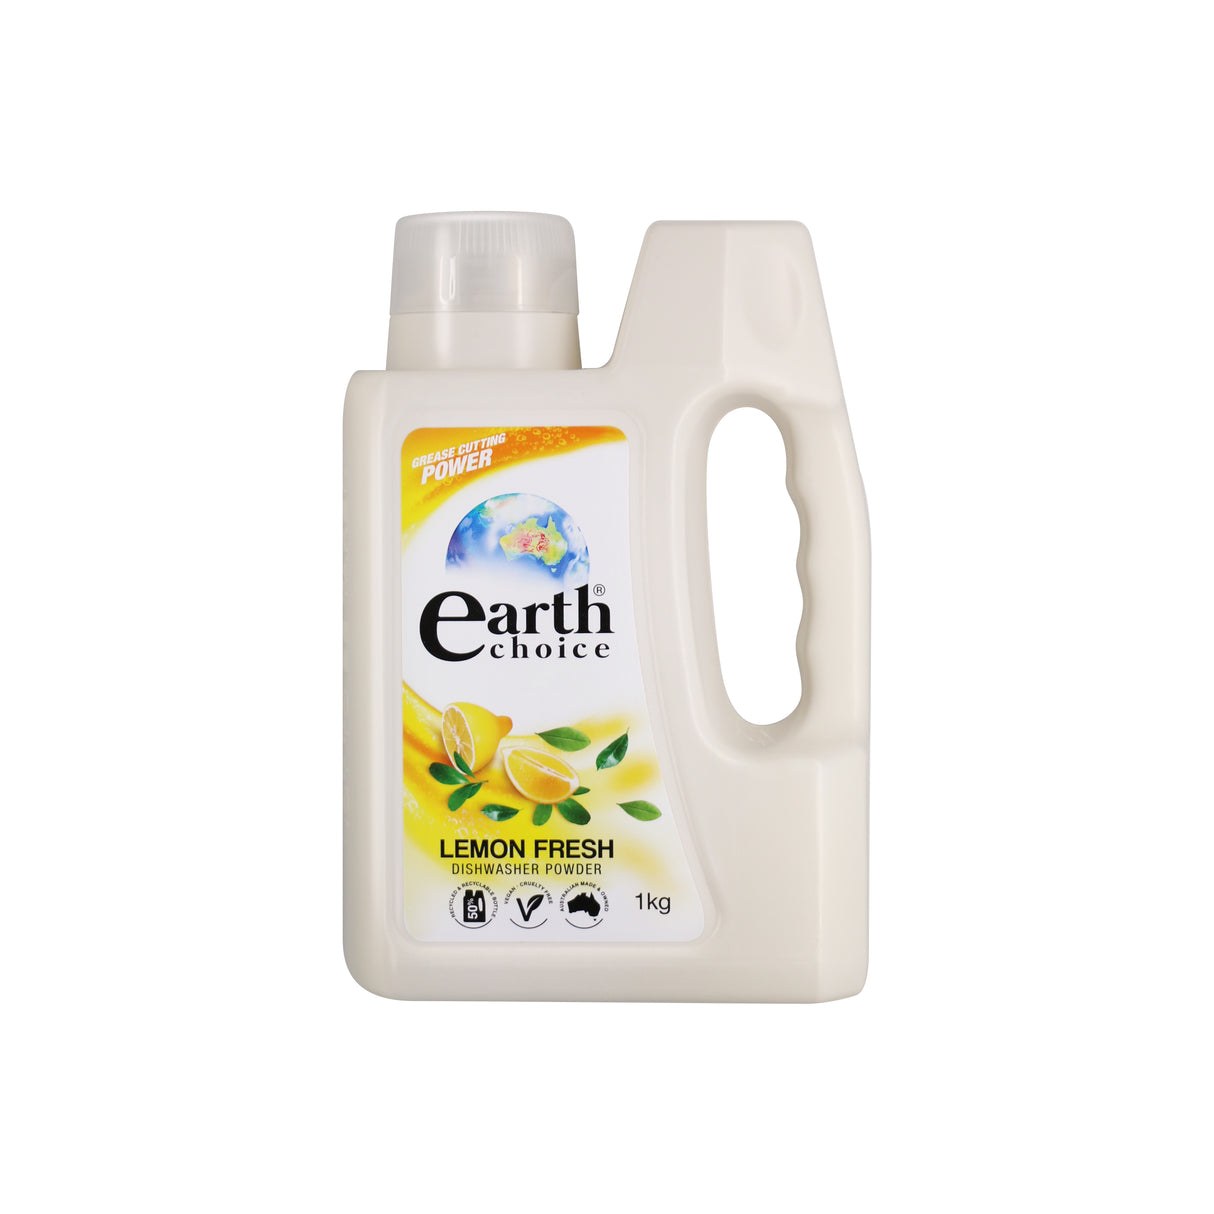 Earth Choice Dishwashing Powder Lemon Fresh 1kg